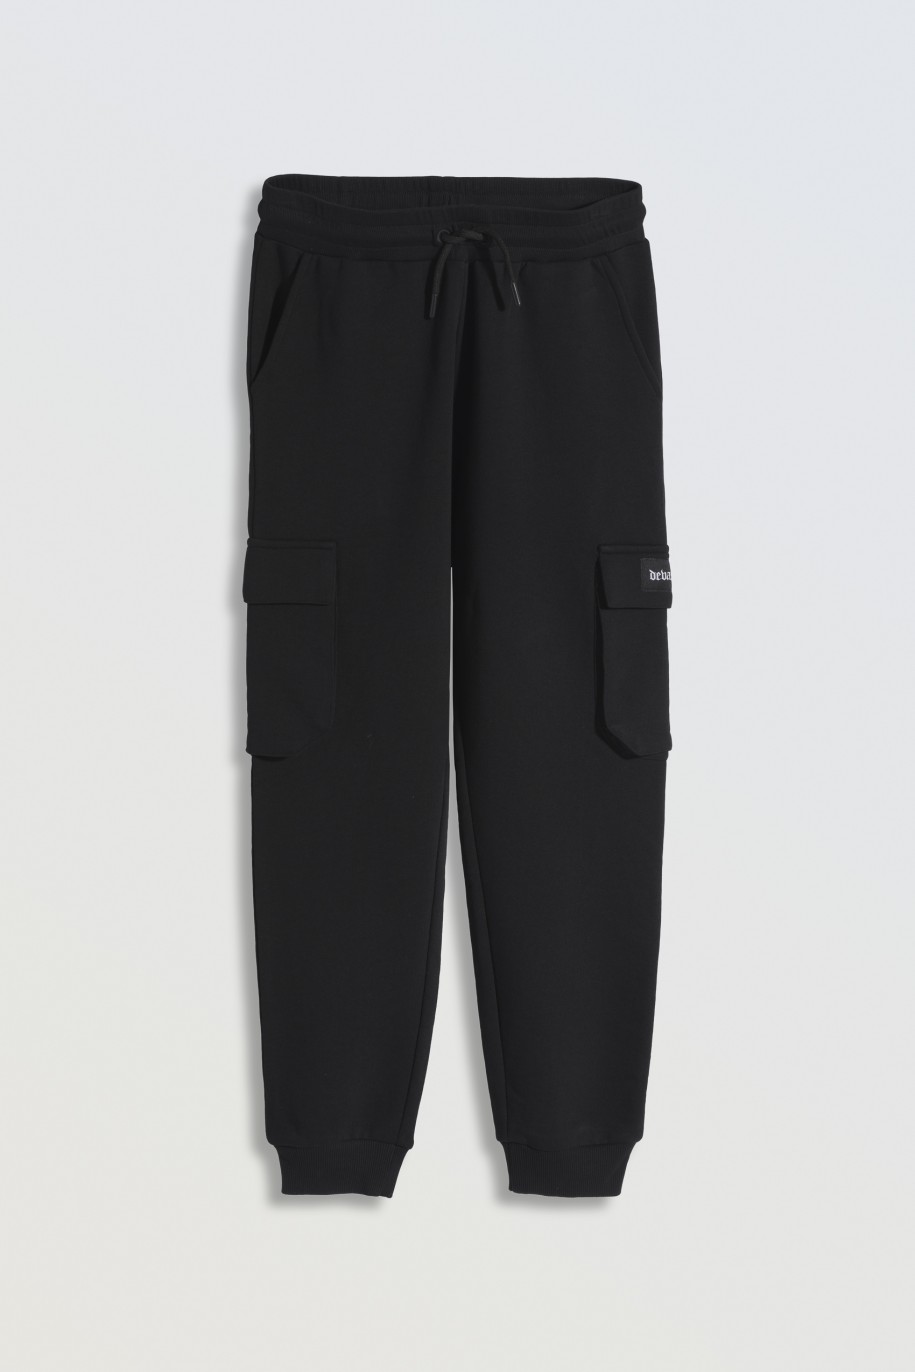 Czarne spodnie dresowe oversize z przestrzennymi kieszeniami na nogawkach - 46793